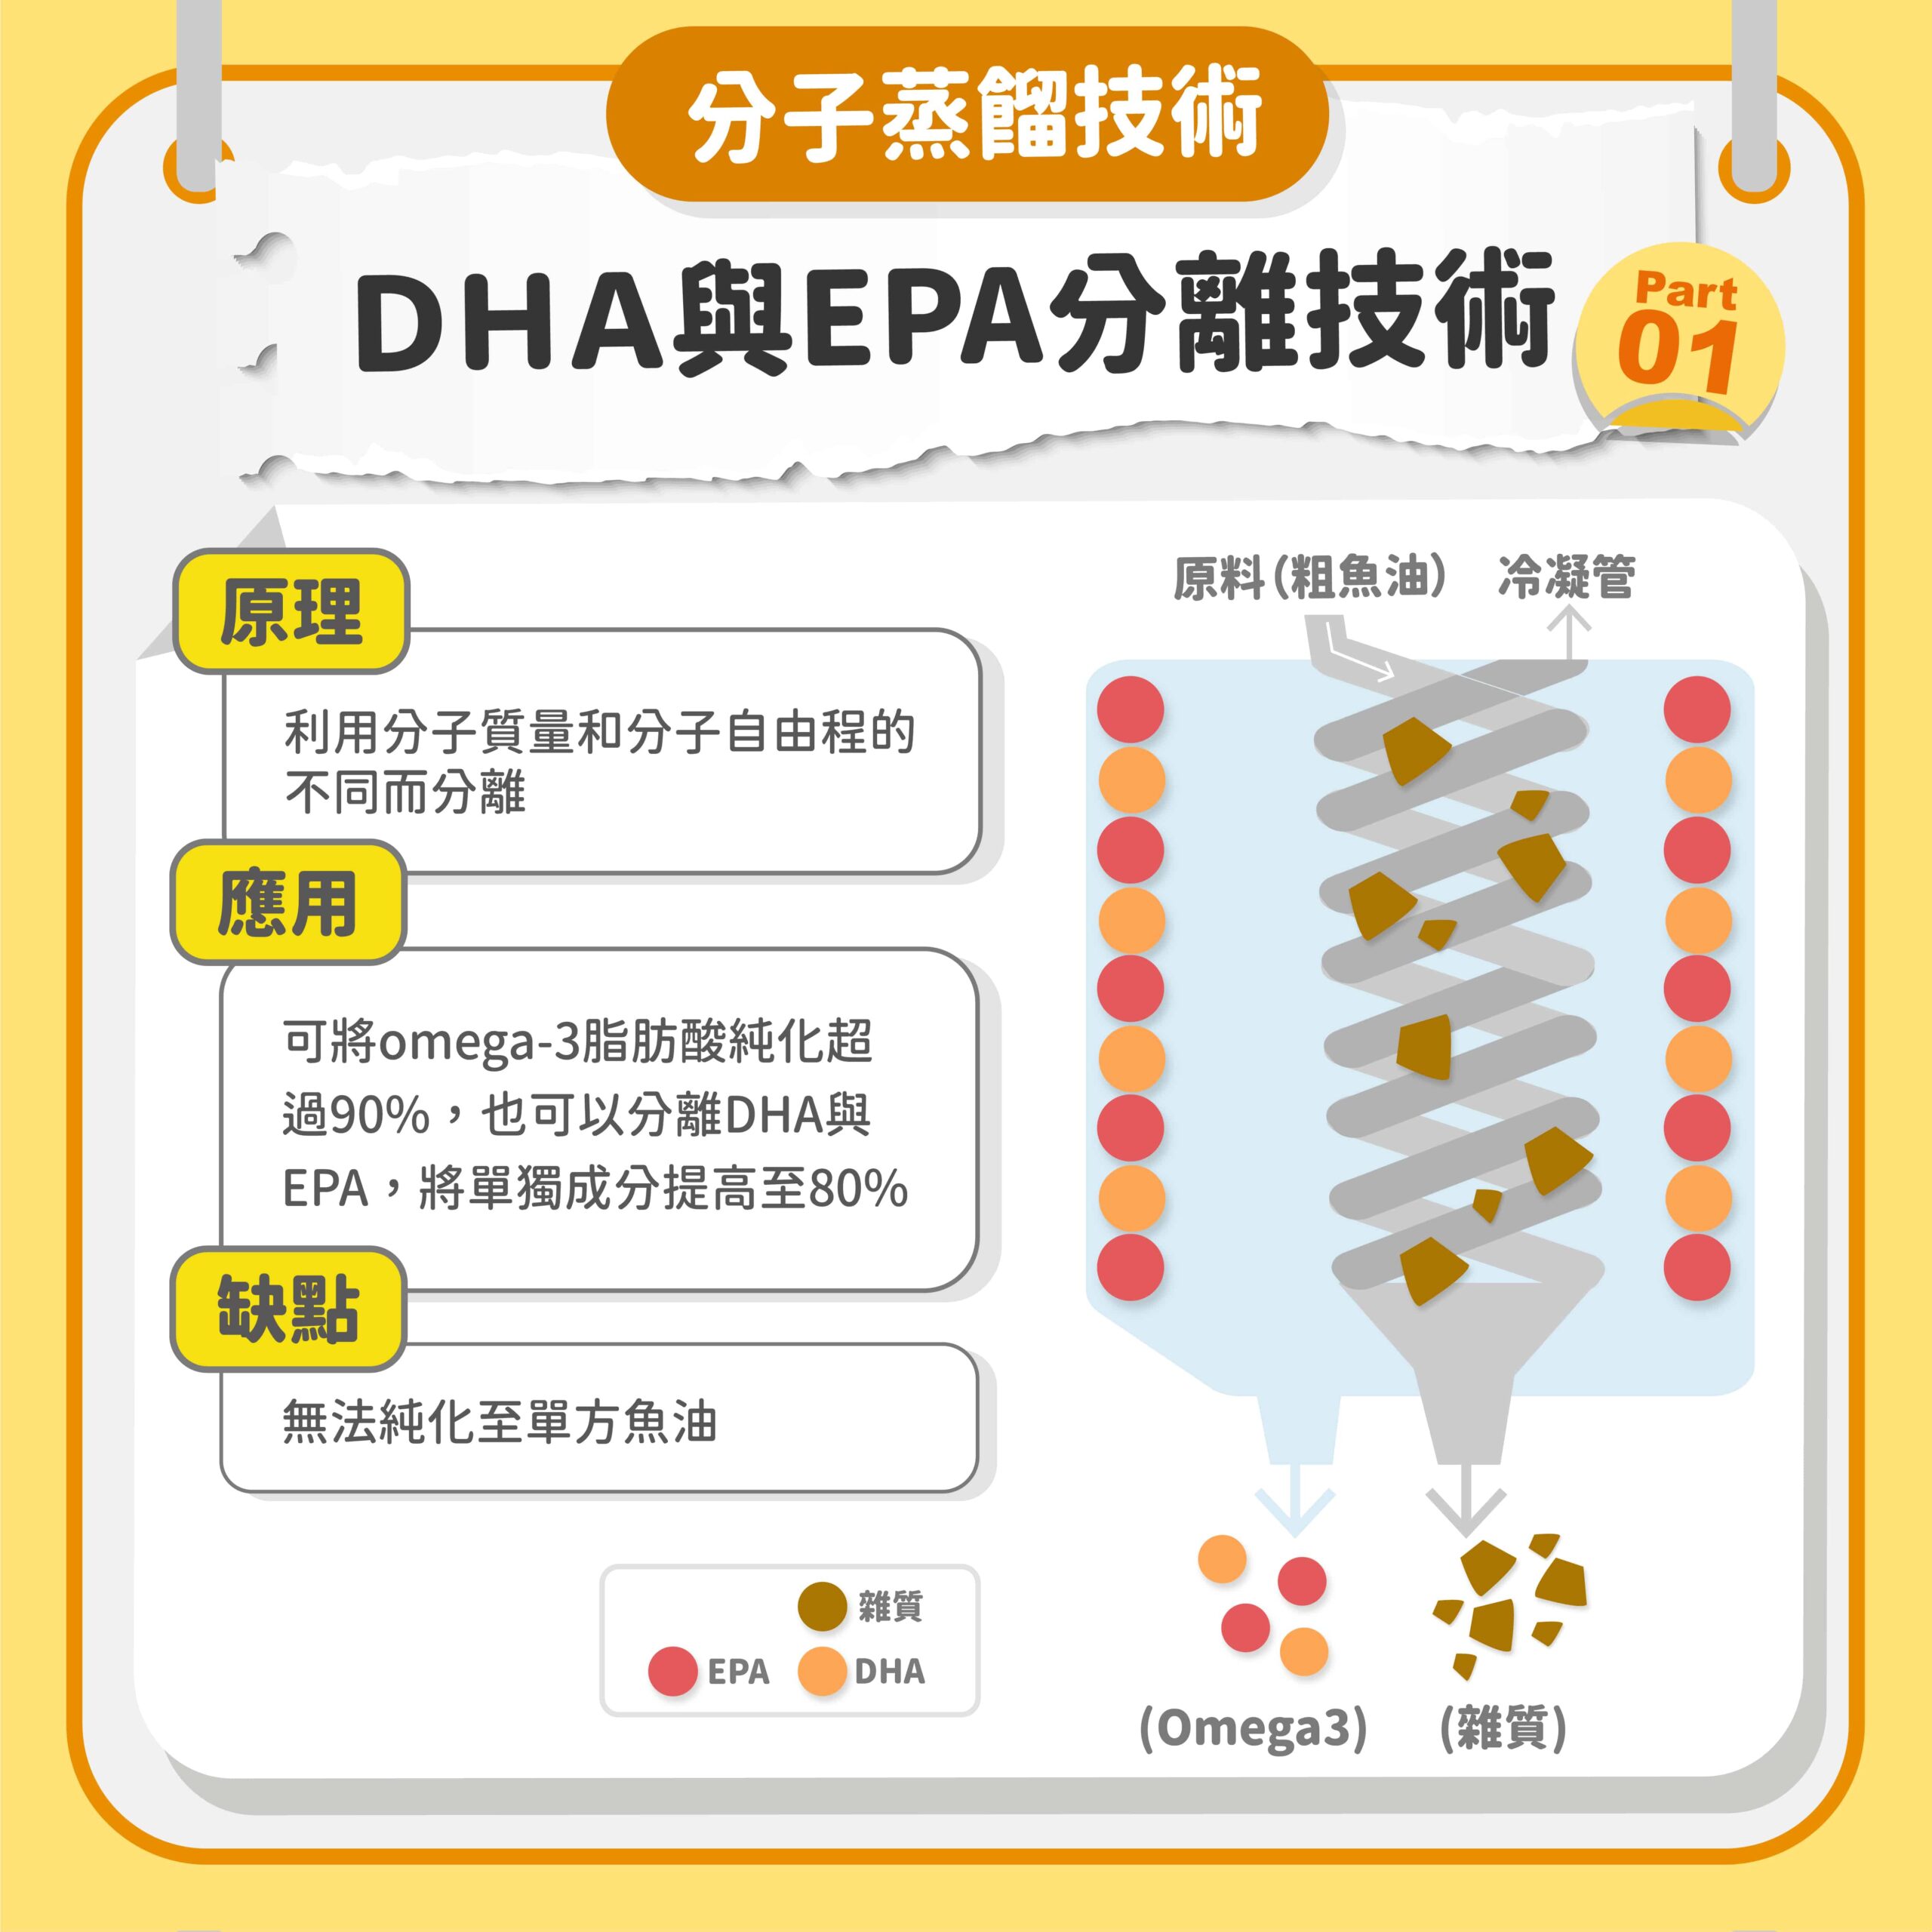 魚油製程-魚油加工-魚油純化-DHA-EPA-超臨界萃取-分子蒸餾-是什麼